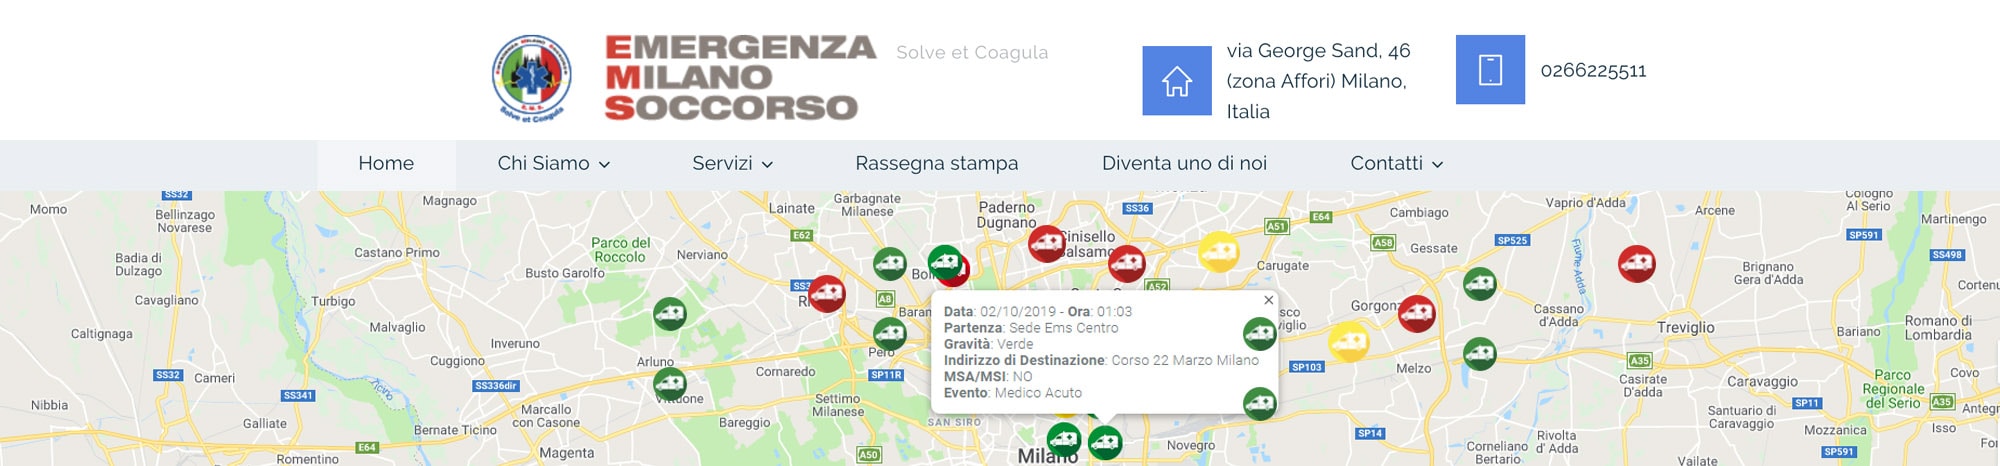 Emergenza Milano Soccorso